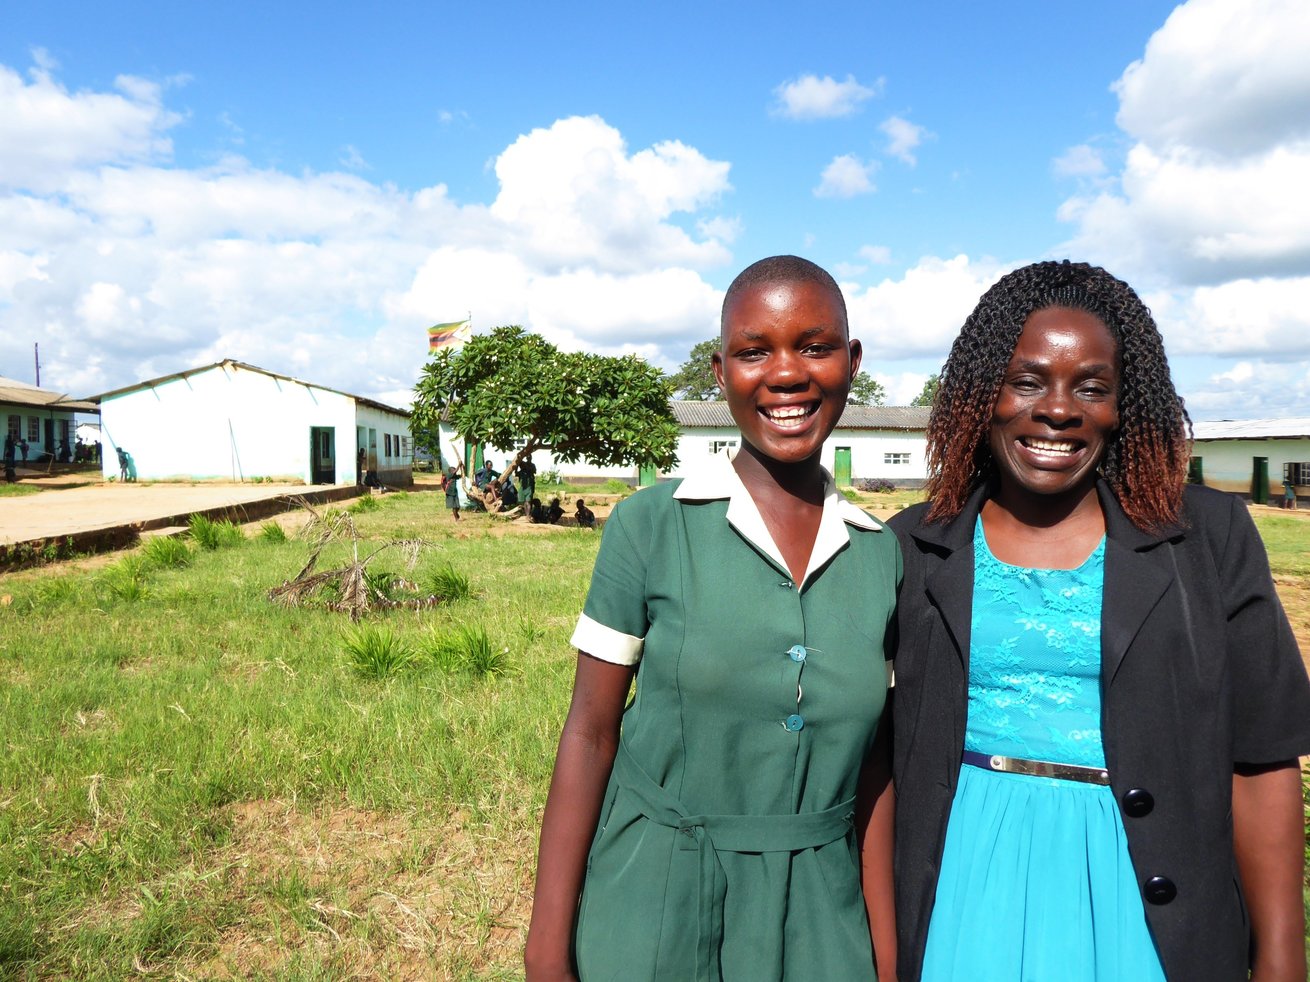 Bienvenue dans le club : la santé promue par des élèves de régions rurales du Zimbabwe